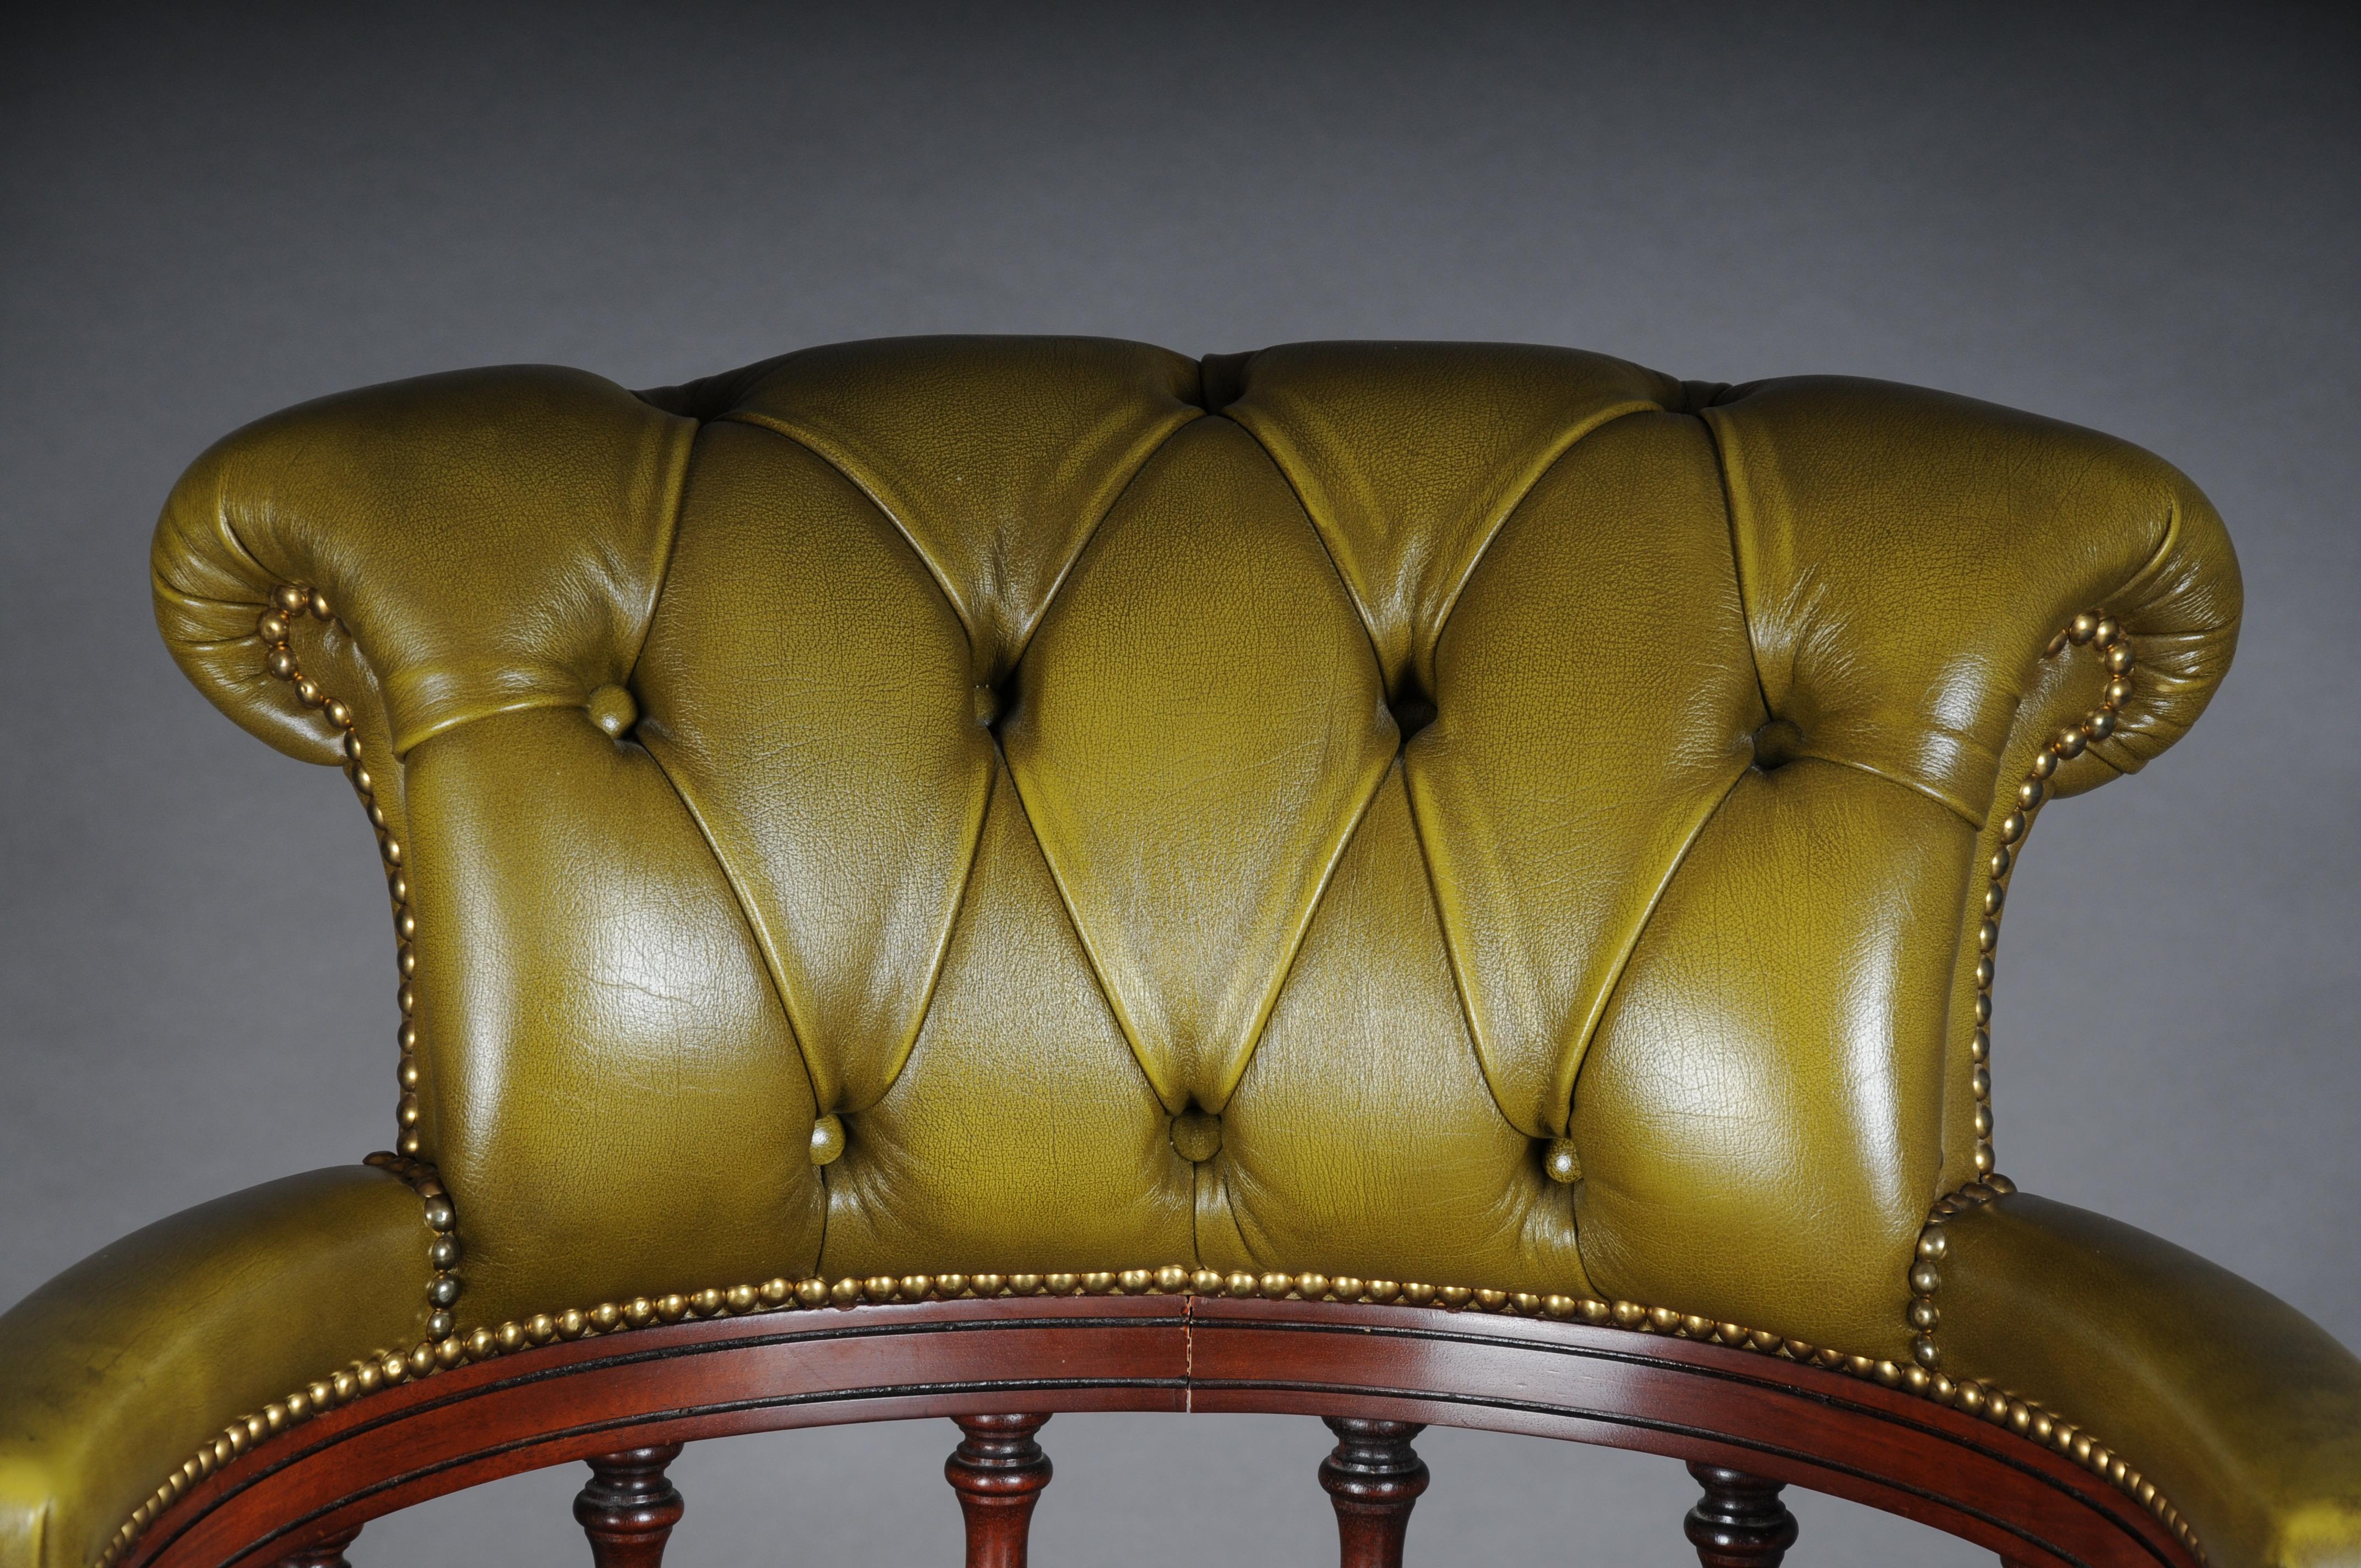 20ème siècle, fauteuil capitaine en cuir anglais

Fauteuil anglais classique / fauteuil en cuir
Corps en bois massif et teinté acajou. Fonction de pivotement et d'assise pivotante.
L'assise et le dossier sont recouverts de cuir anglais classique.

 